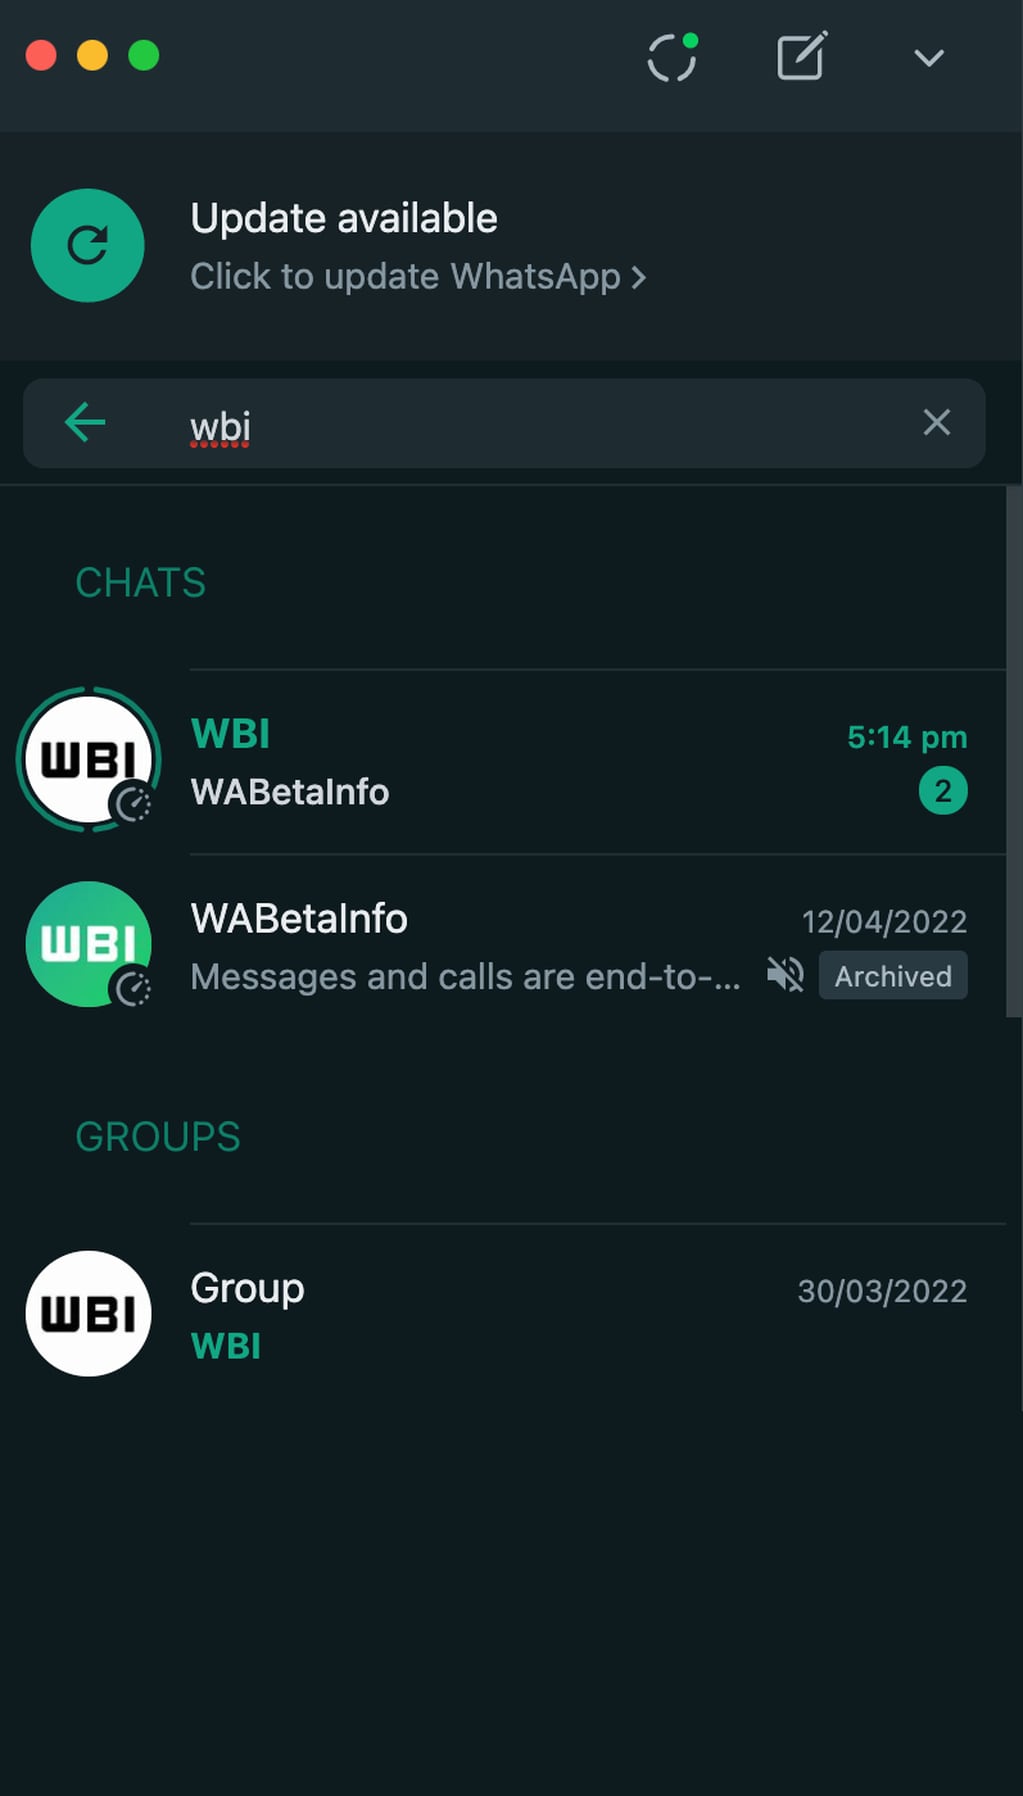 El sitio WABetaInfo compartió un adelanto de cómo se verán los nuevos estados de WhatsApp.